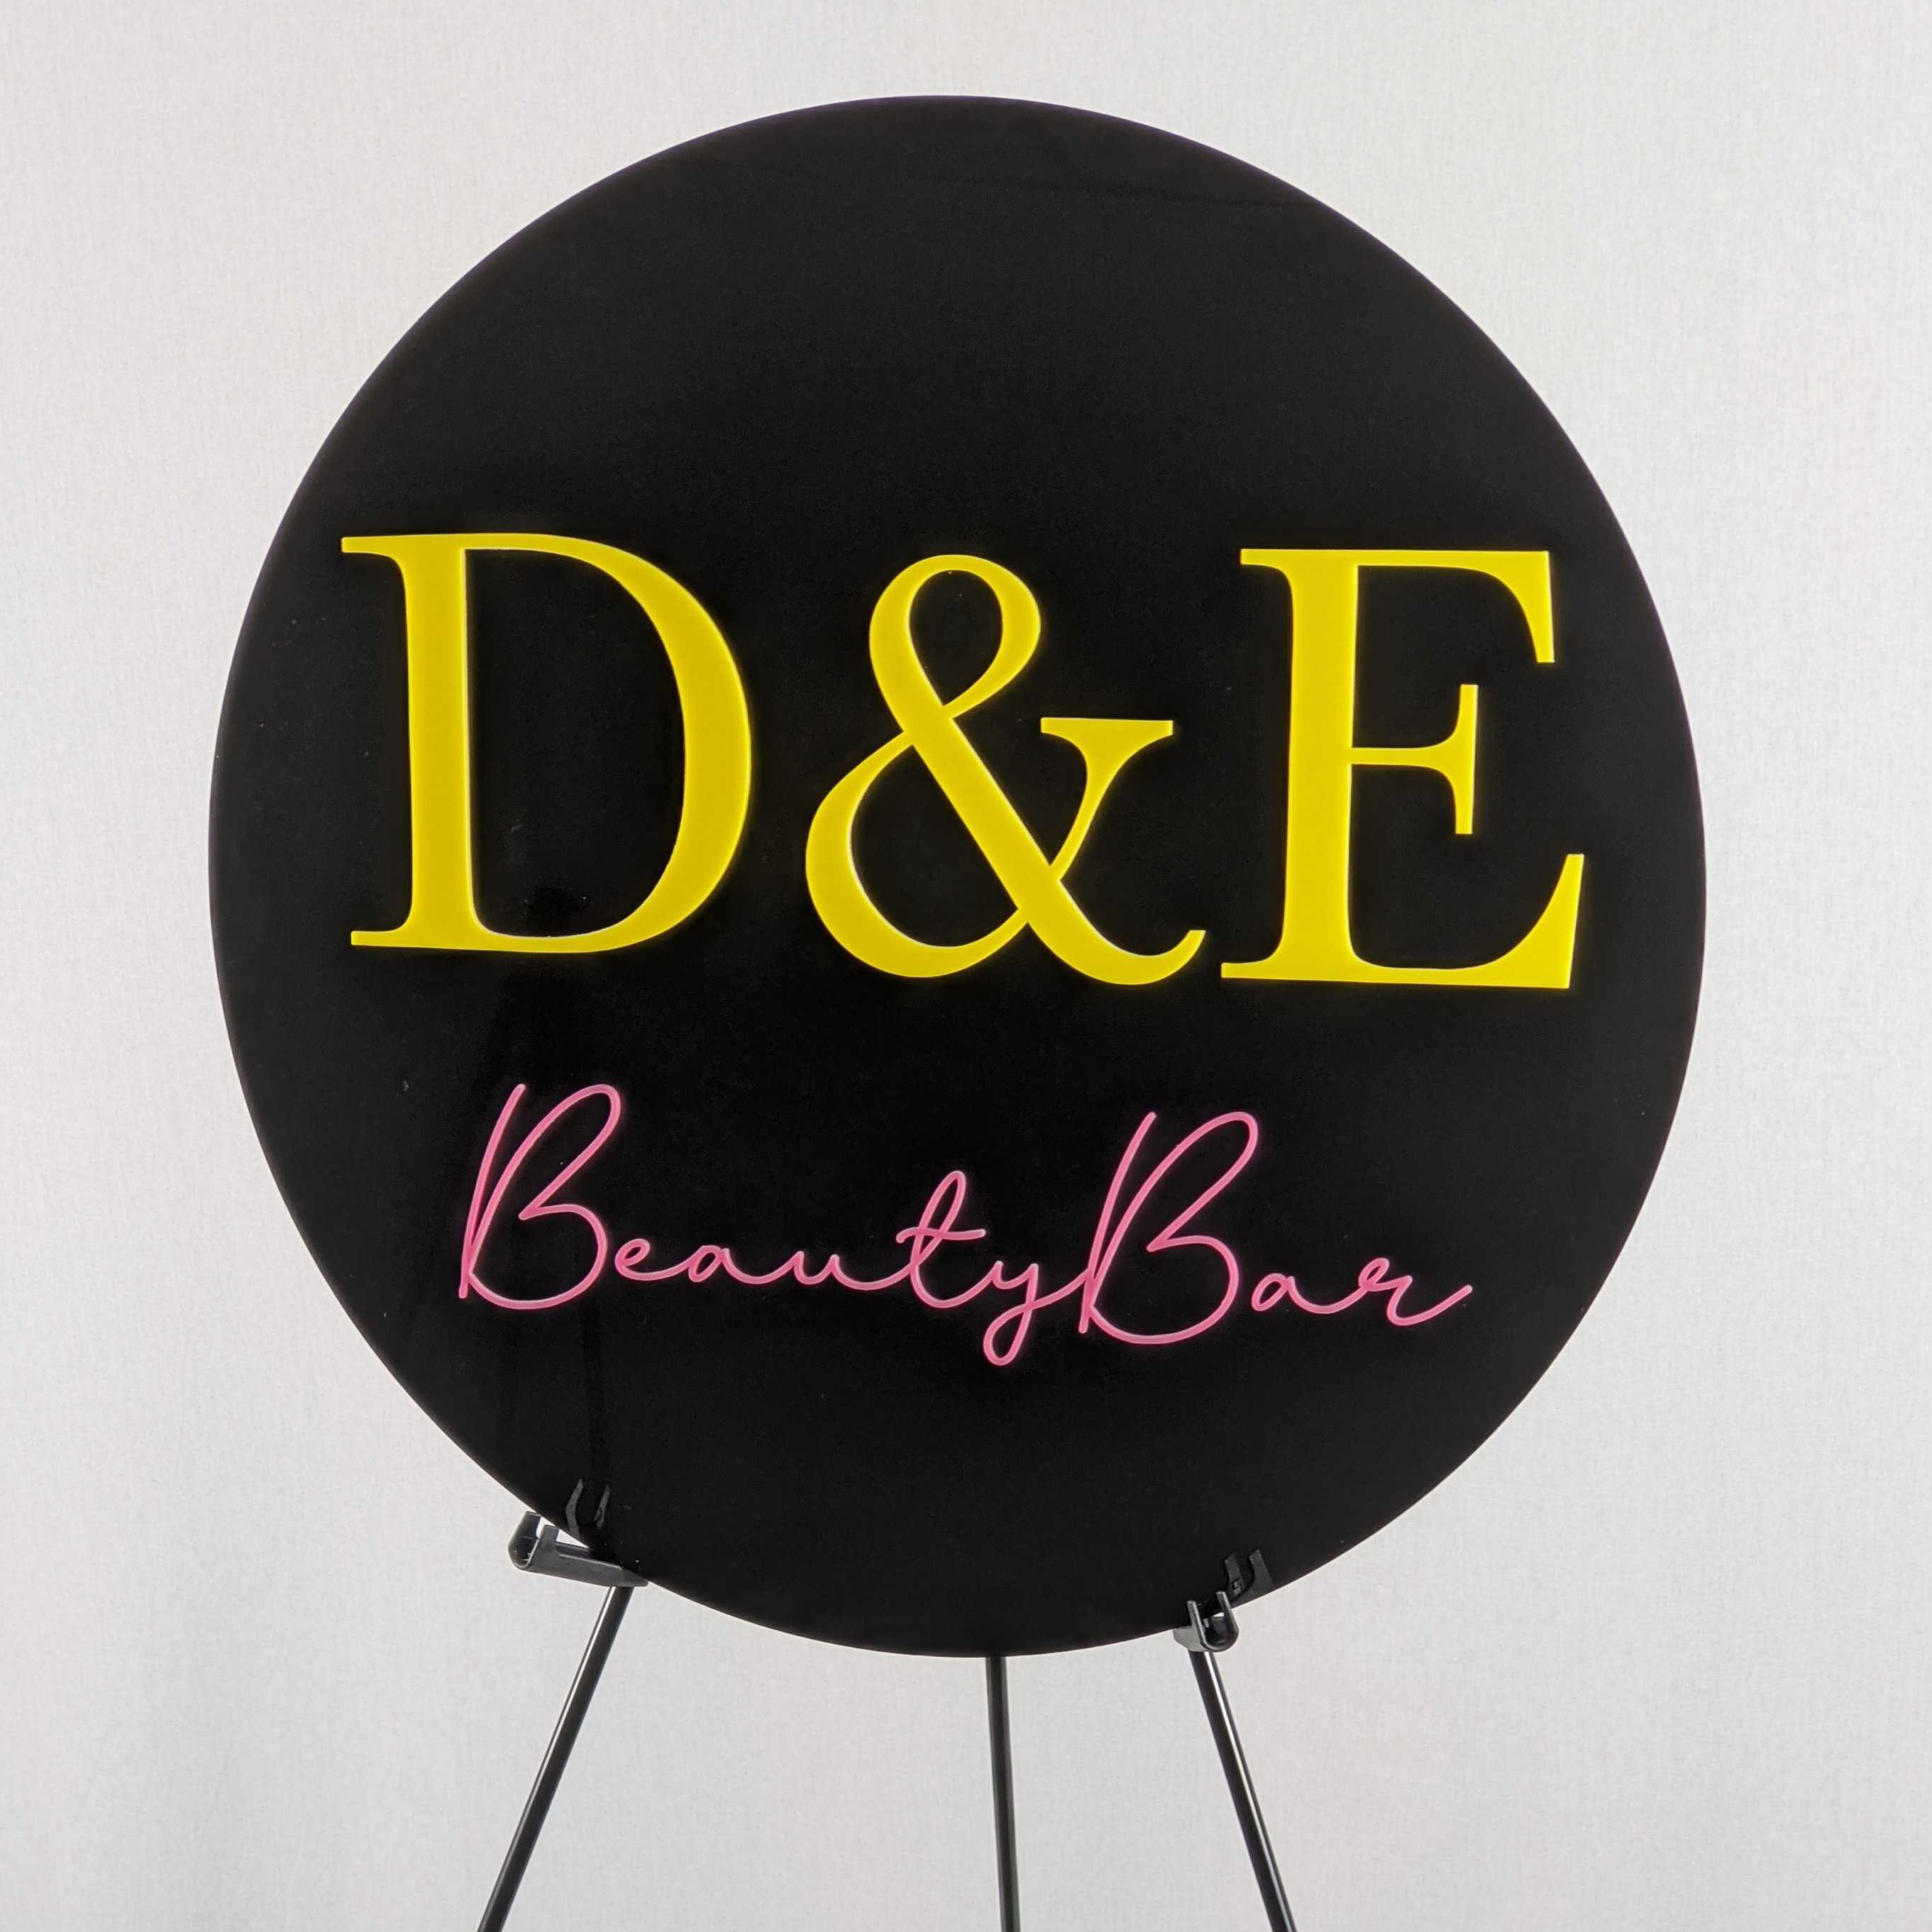 D&E Beauty Bar round sign